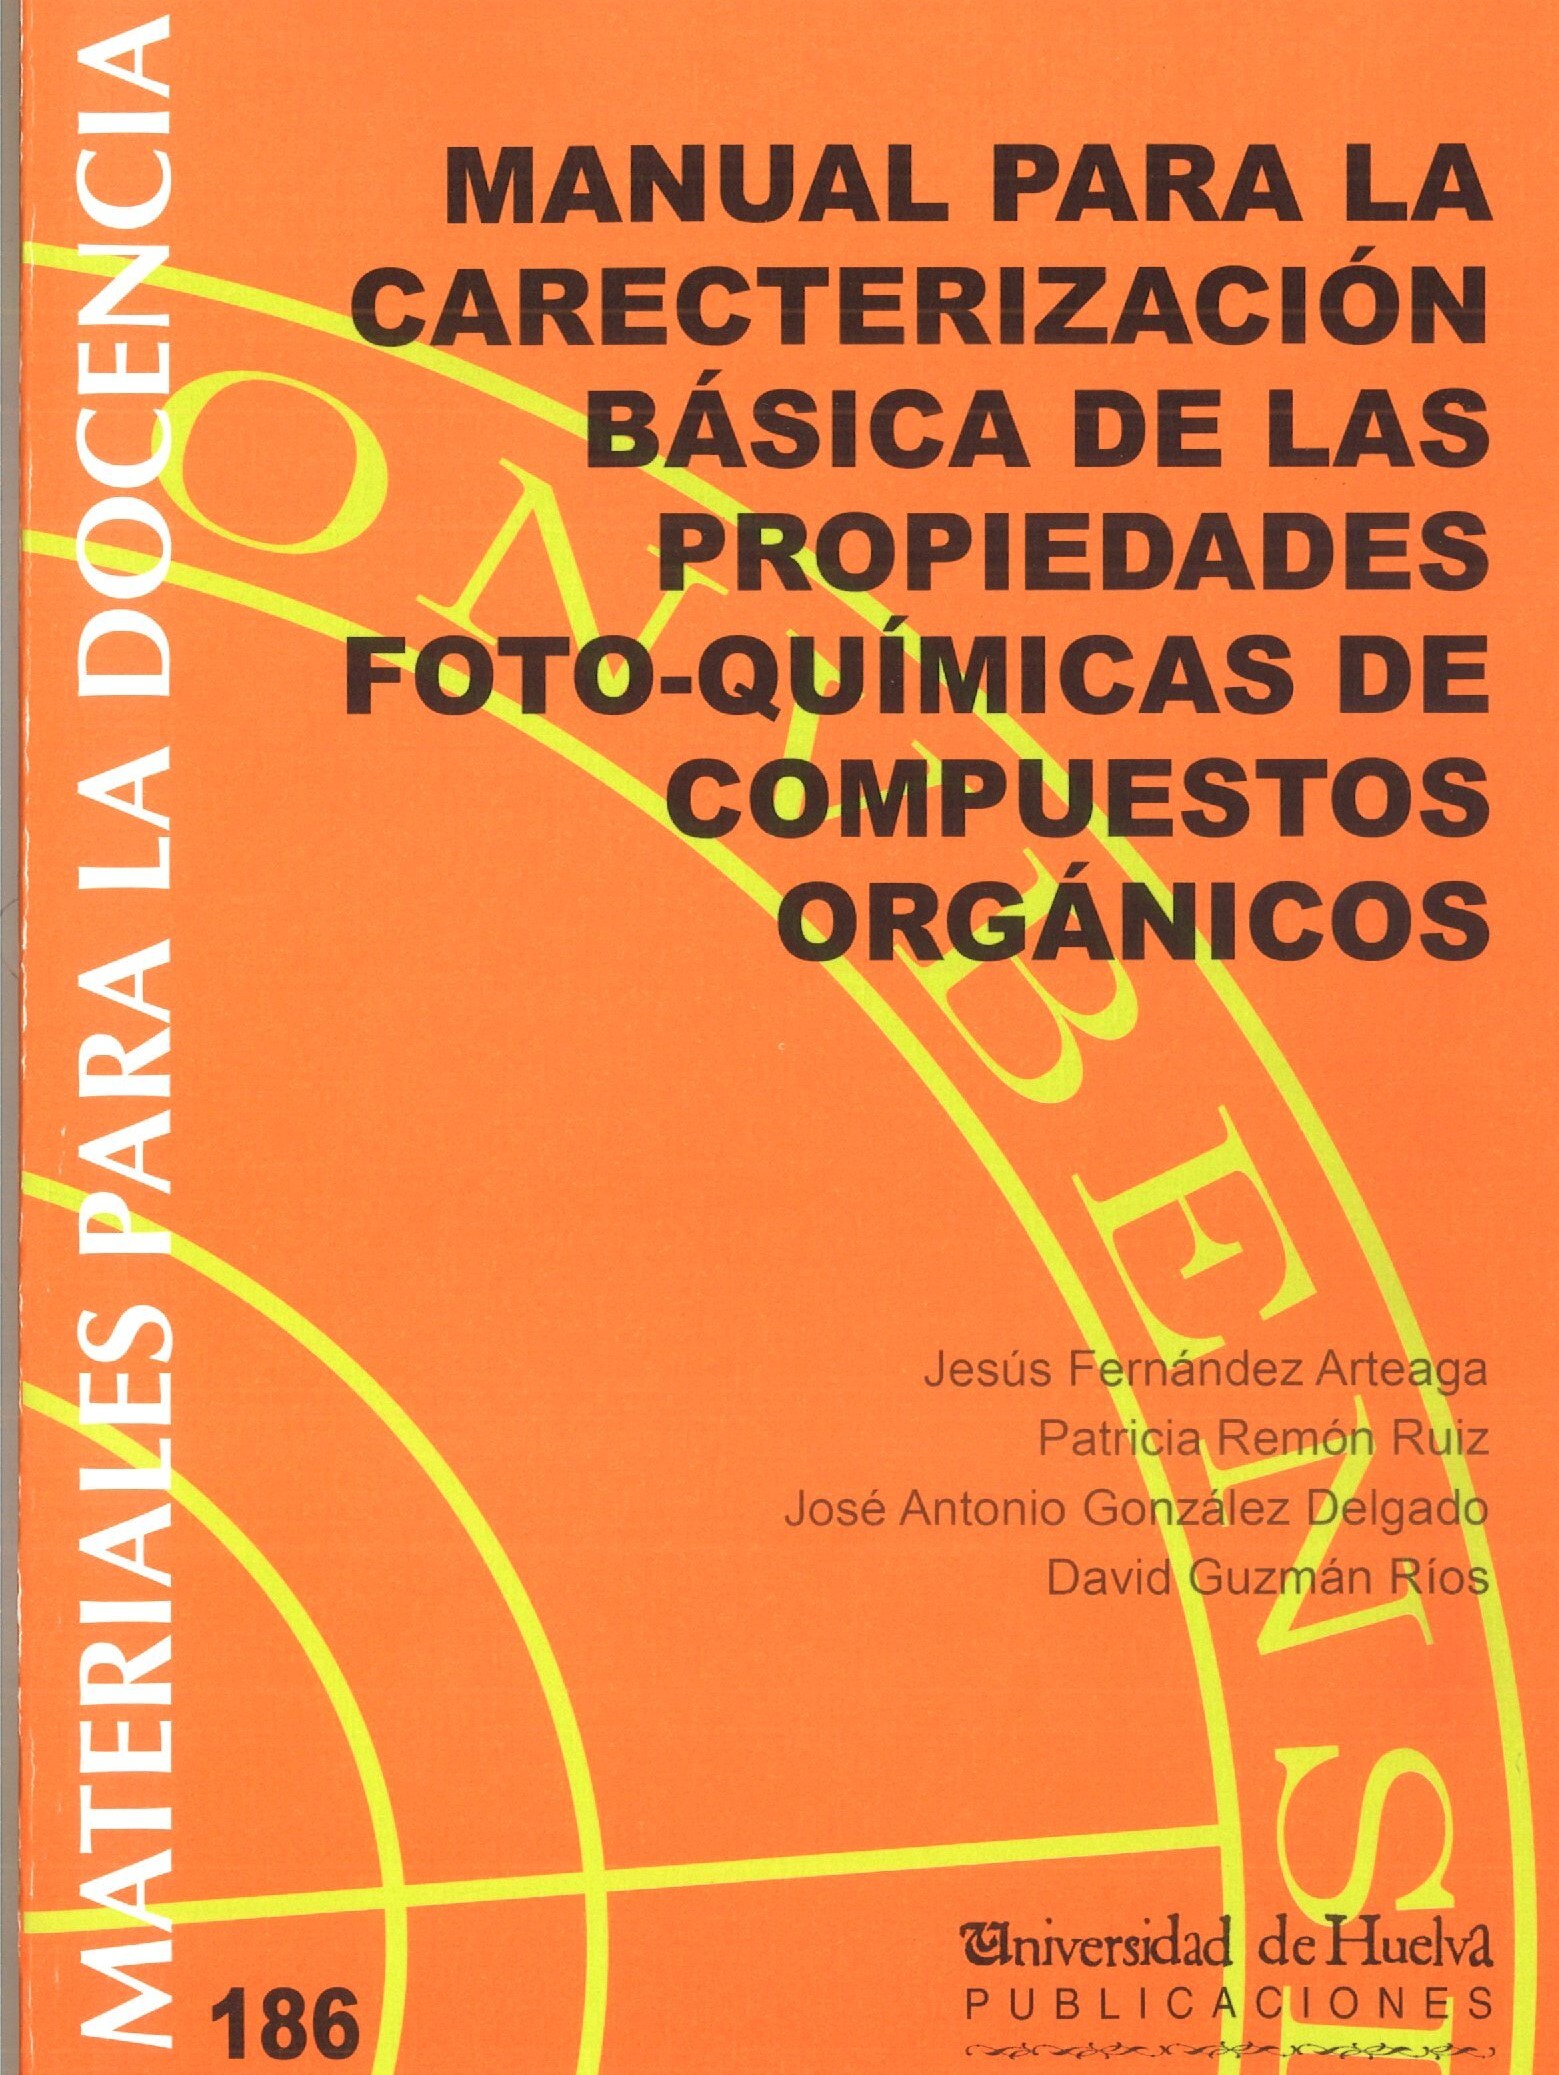 Imagen de portada del libro Manual para la caracterización básica de las propiedades foto-químicas de compuesto orgánicos